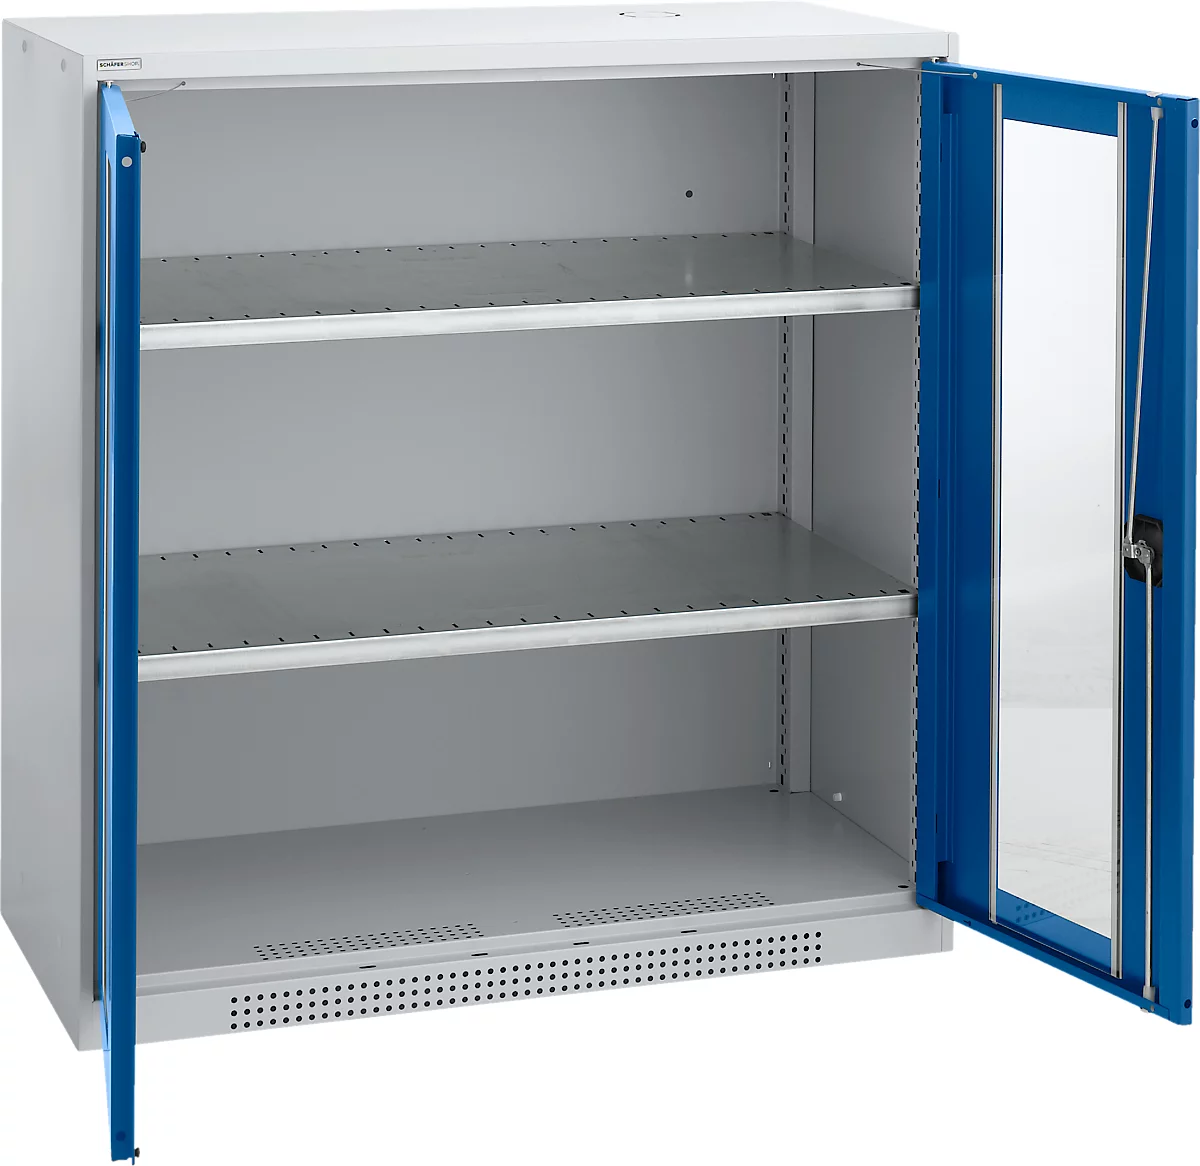 Schäfer Shop Genius armario de doble puerta FS, acero, ventana, agujeros de ventilación, A 1055 x P 520 x A 1105 mm, 3 OH, aluminio blanco/ azul genciana, hasta 300 kg